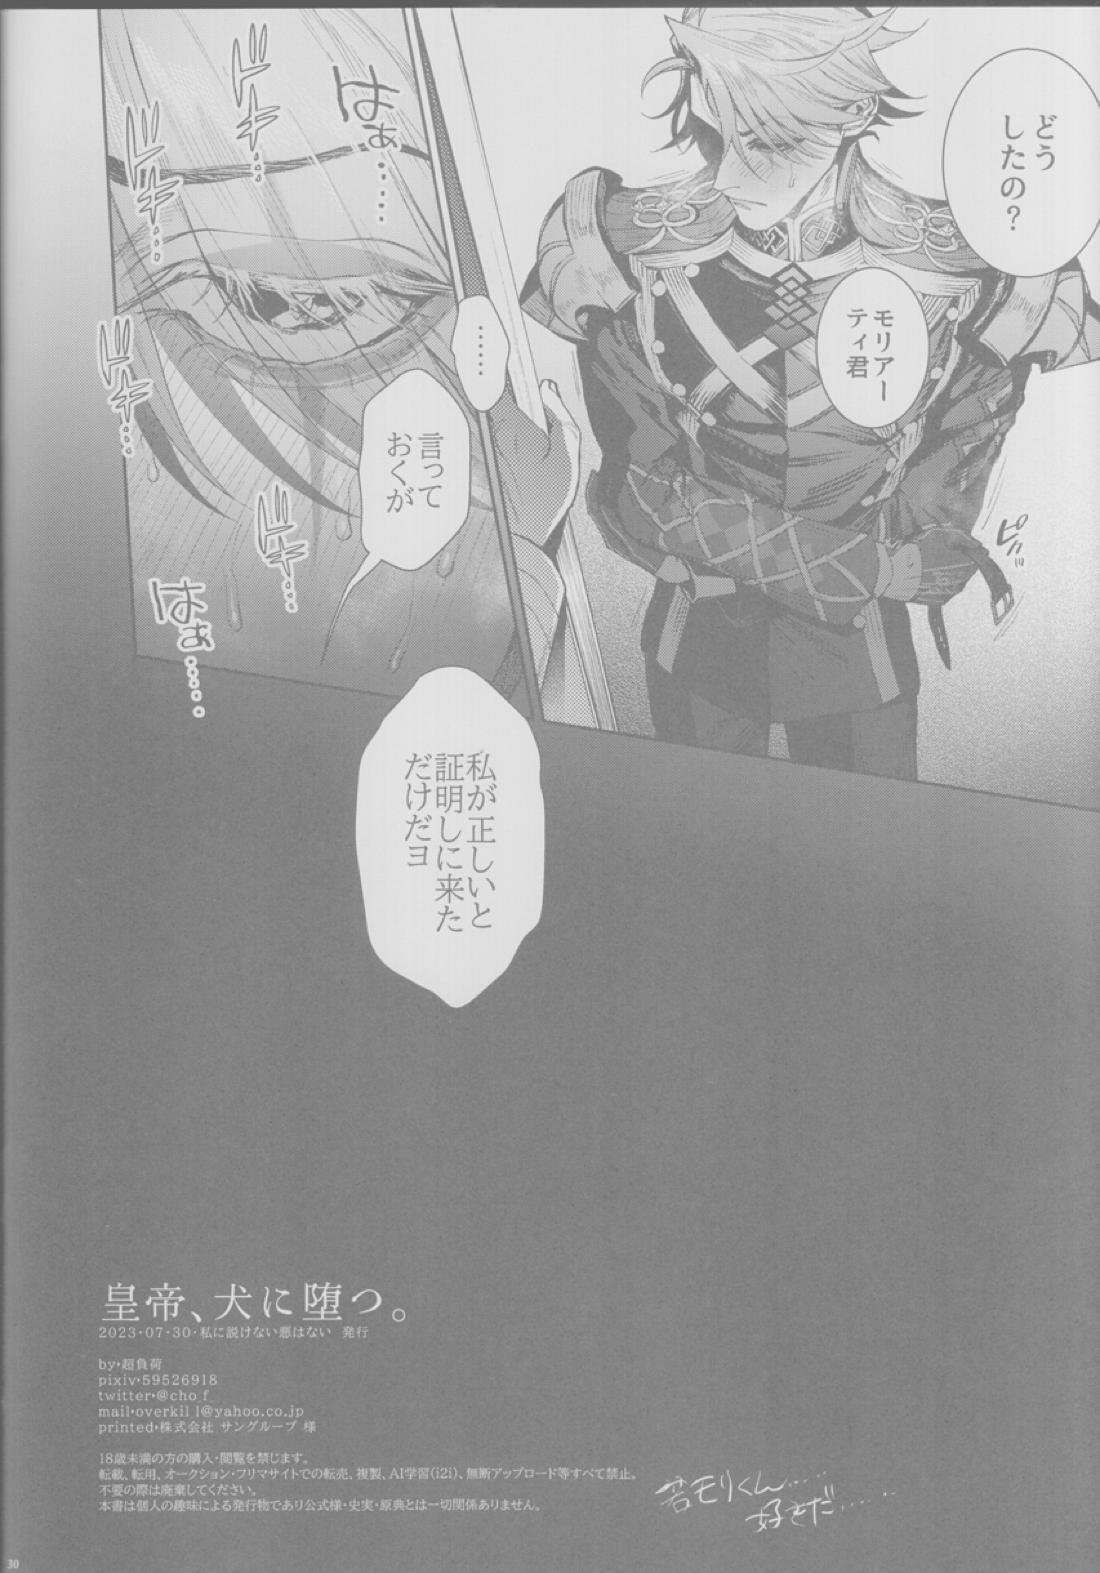 【BL漫画 Fate/Grand Order】悪いことばかりする悪の天才モリアーティがマスターの絶対服従コマンドコードで身体を操られて調教されちゃうドキドキゲイエッチ29